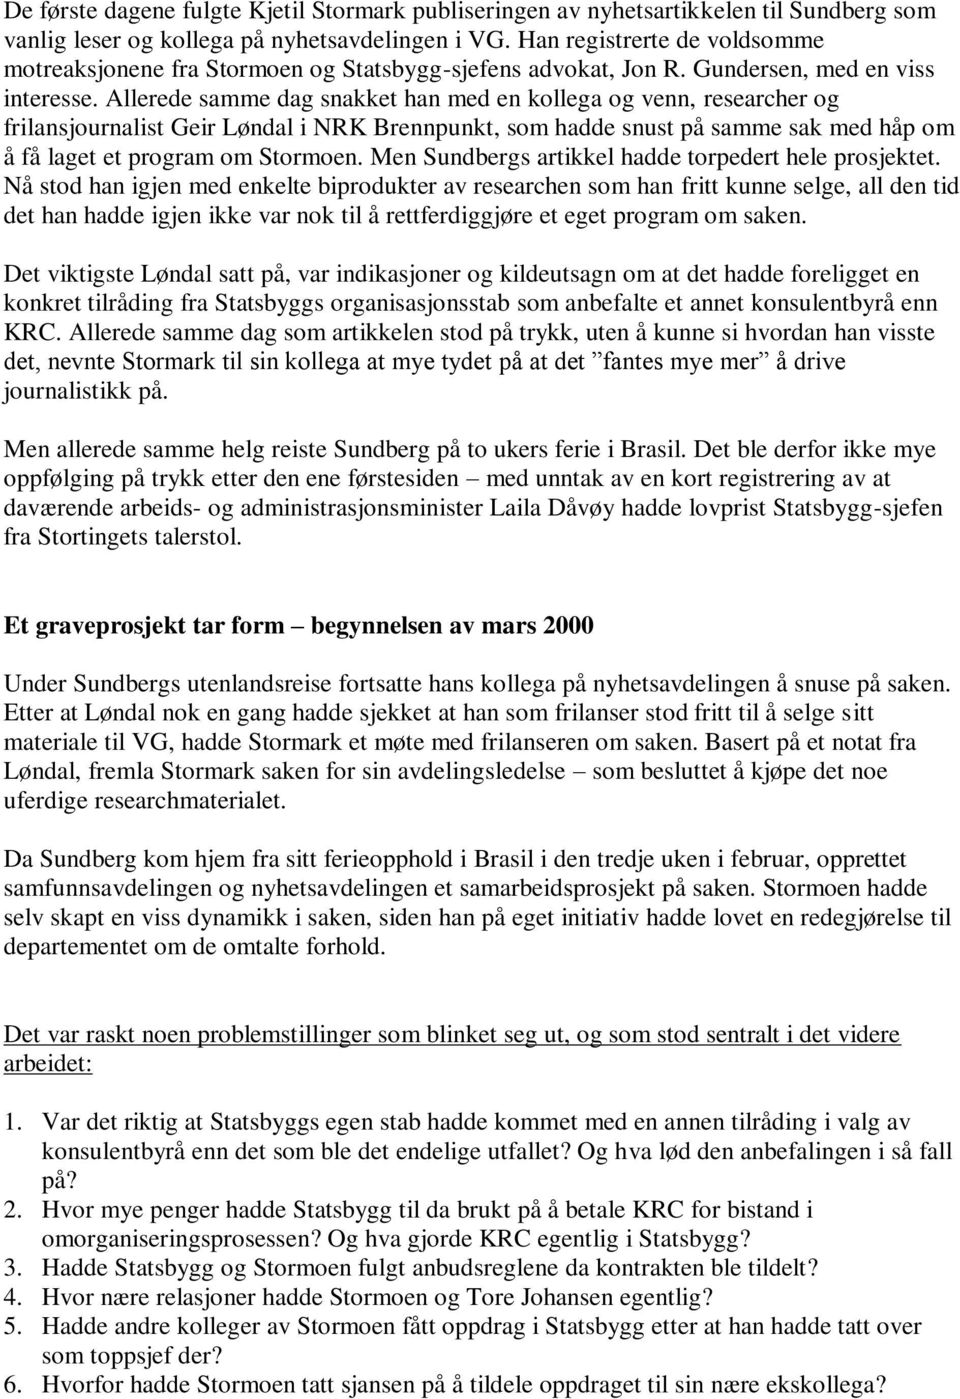 Allerede samme dag snakket han med en kollega og venn, researcher og frilansjournalist Geir Løndal i NRK Brennpunkt, som hadde snust på samme sak med håp om å få laget et program om Stormoen.